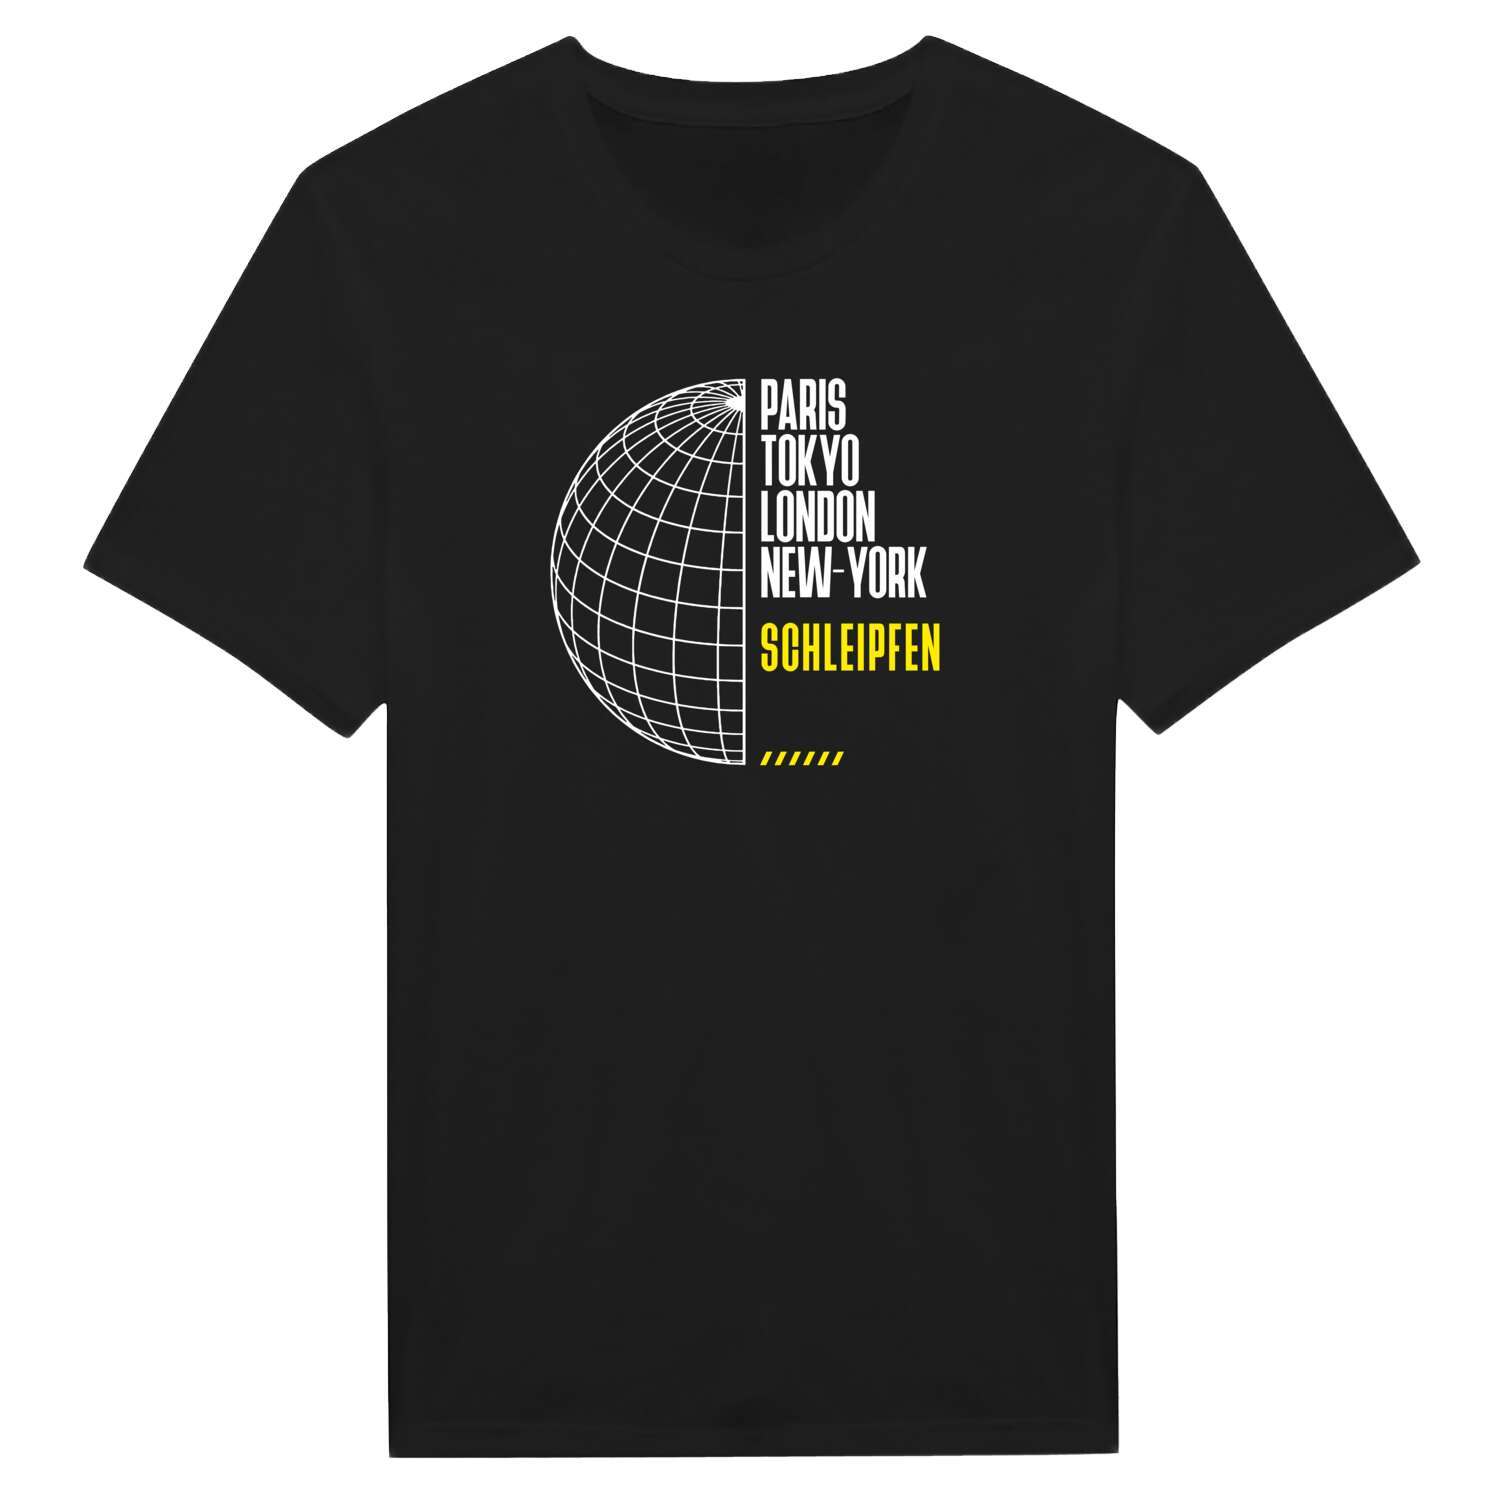 Schleipfen T-Shirt »Paris Tokyo London«